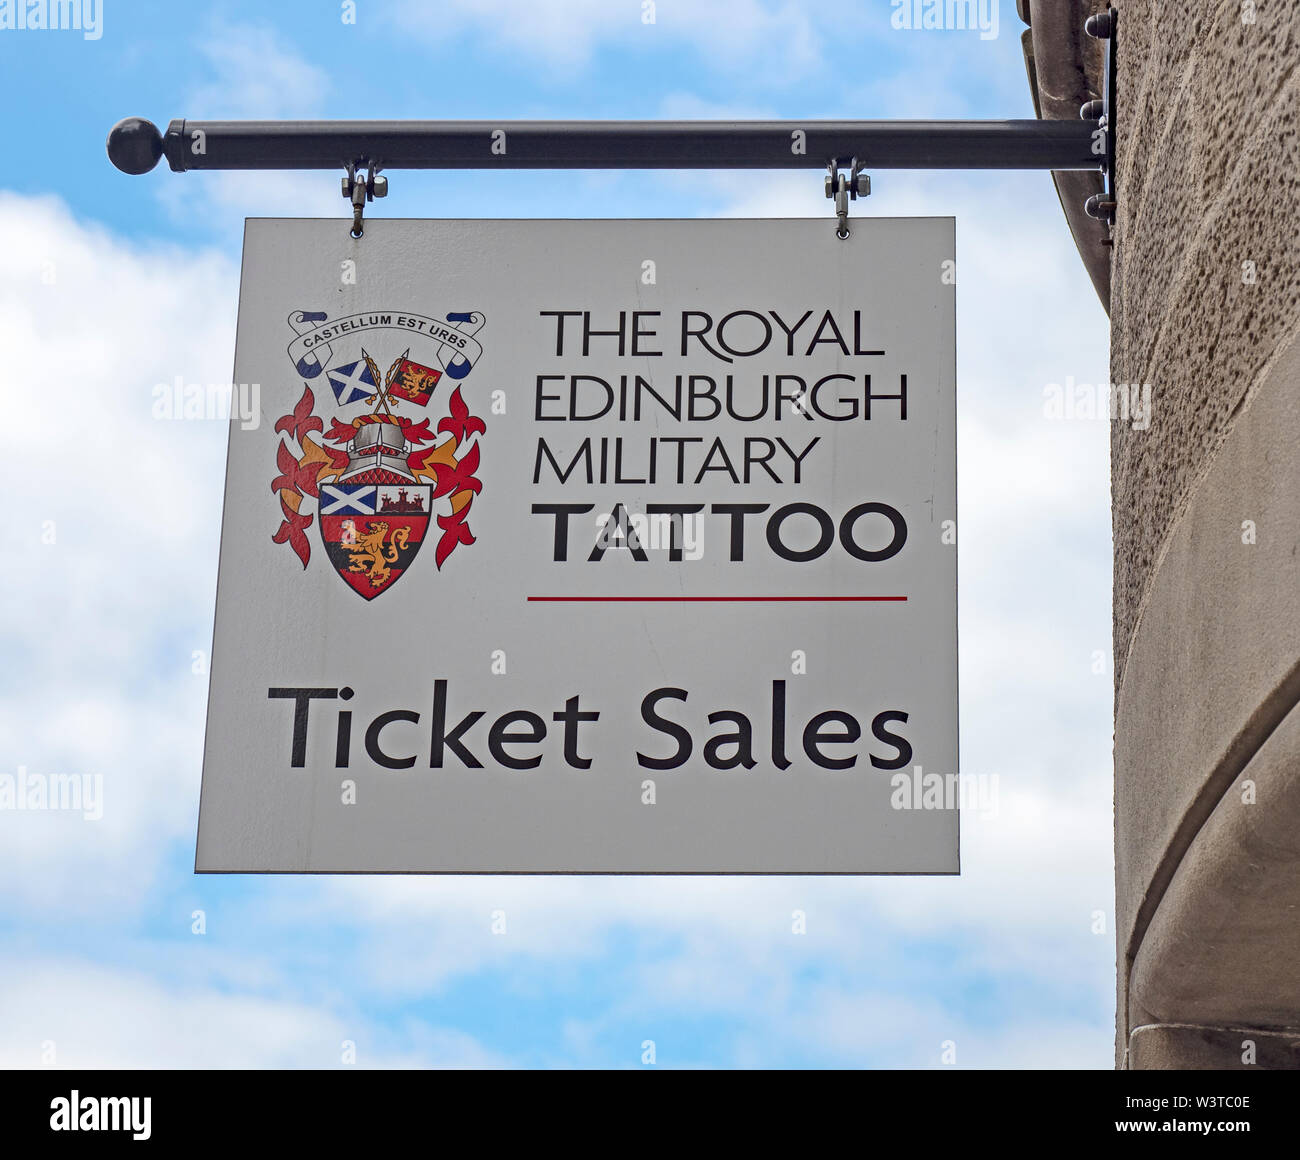 Il segno della biglietteria del Royal Edinburgh Tattoo militare. La manifestazione si svolge ogni agosto come parte del Festival di Edimburgo. Foto Stock